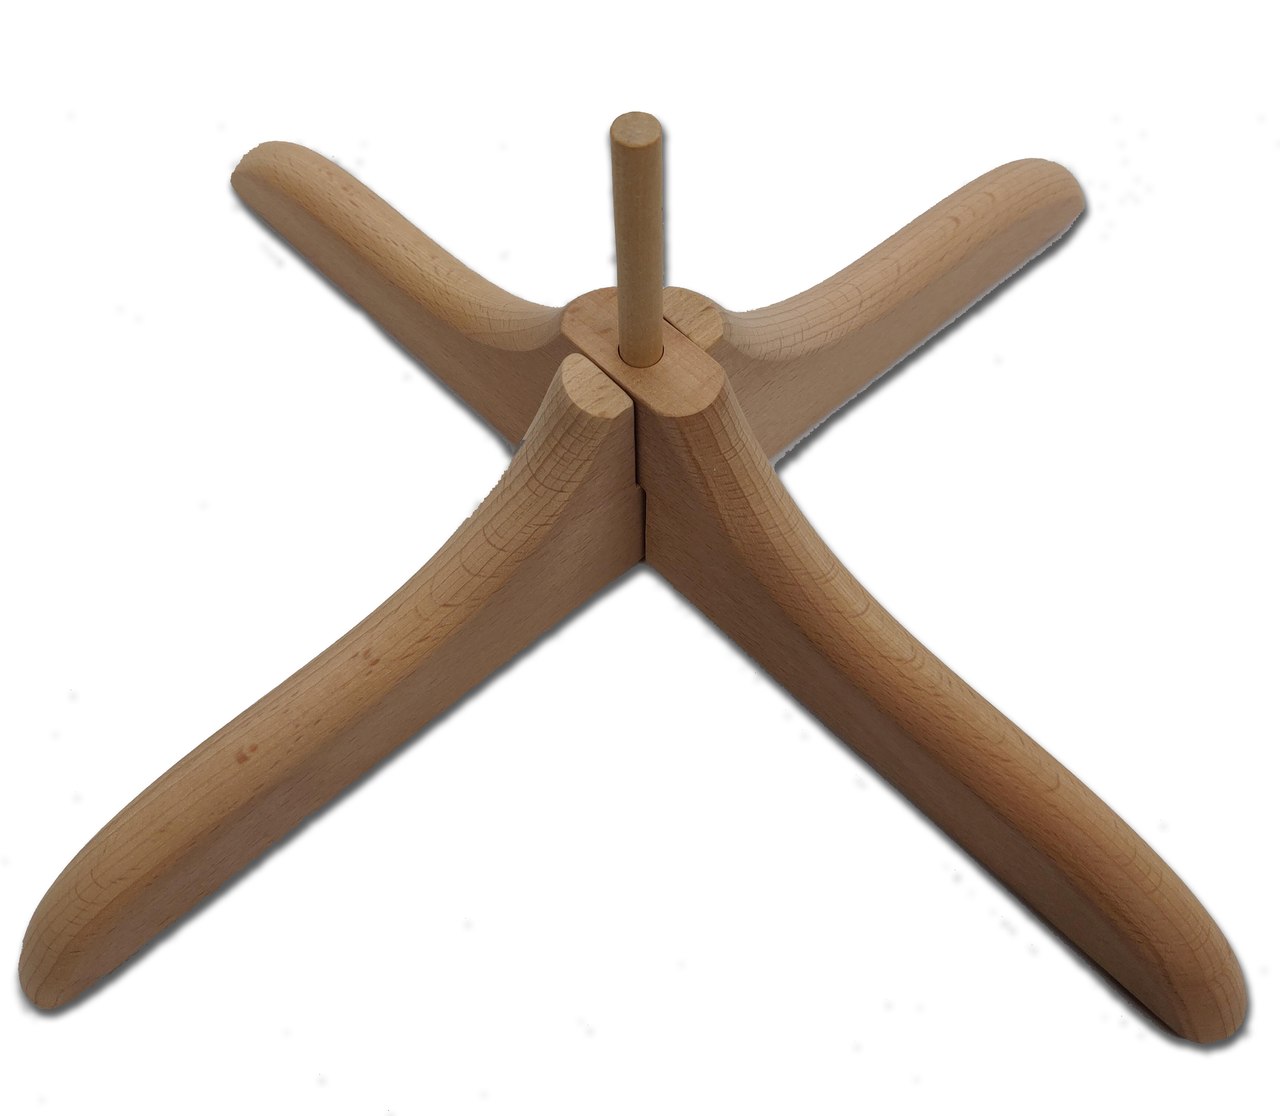 Stanwood Needlecraft - Wooden Umbrella Swift Yarn Winder - Large, 8.5 ft -  Stanwood Imports